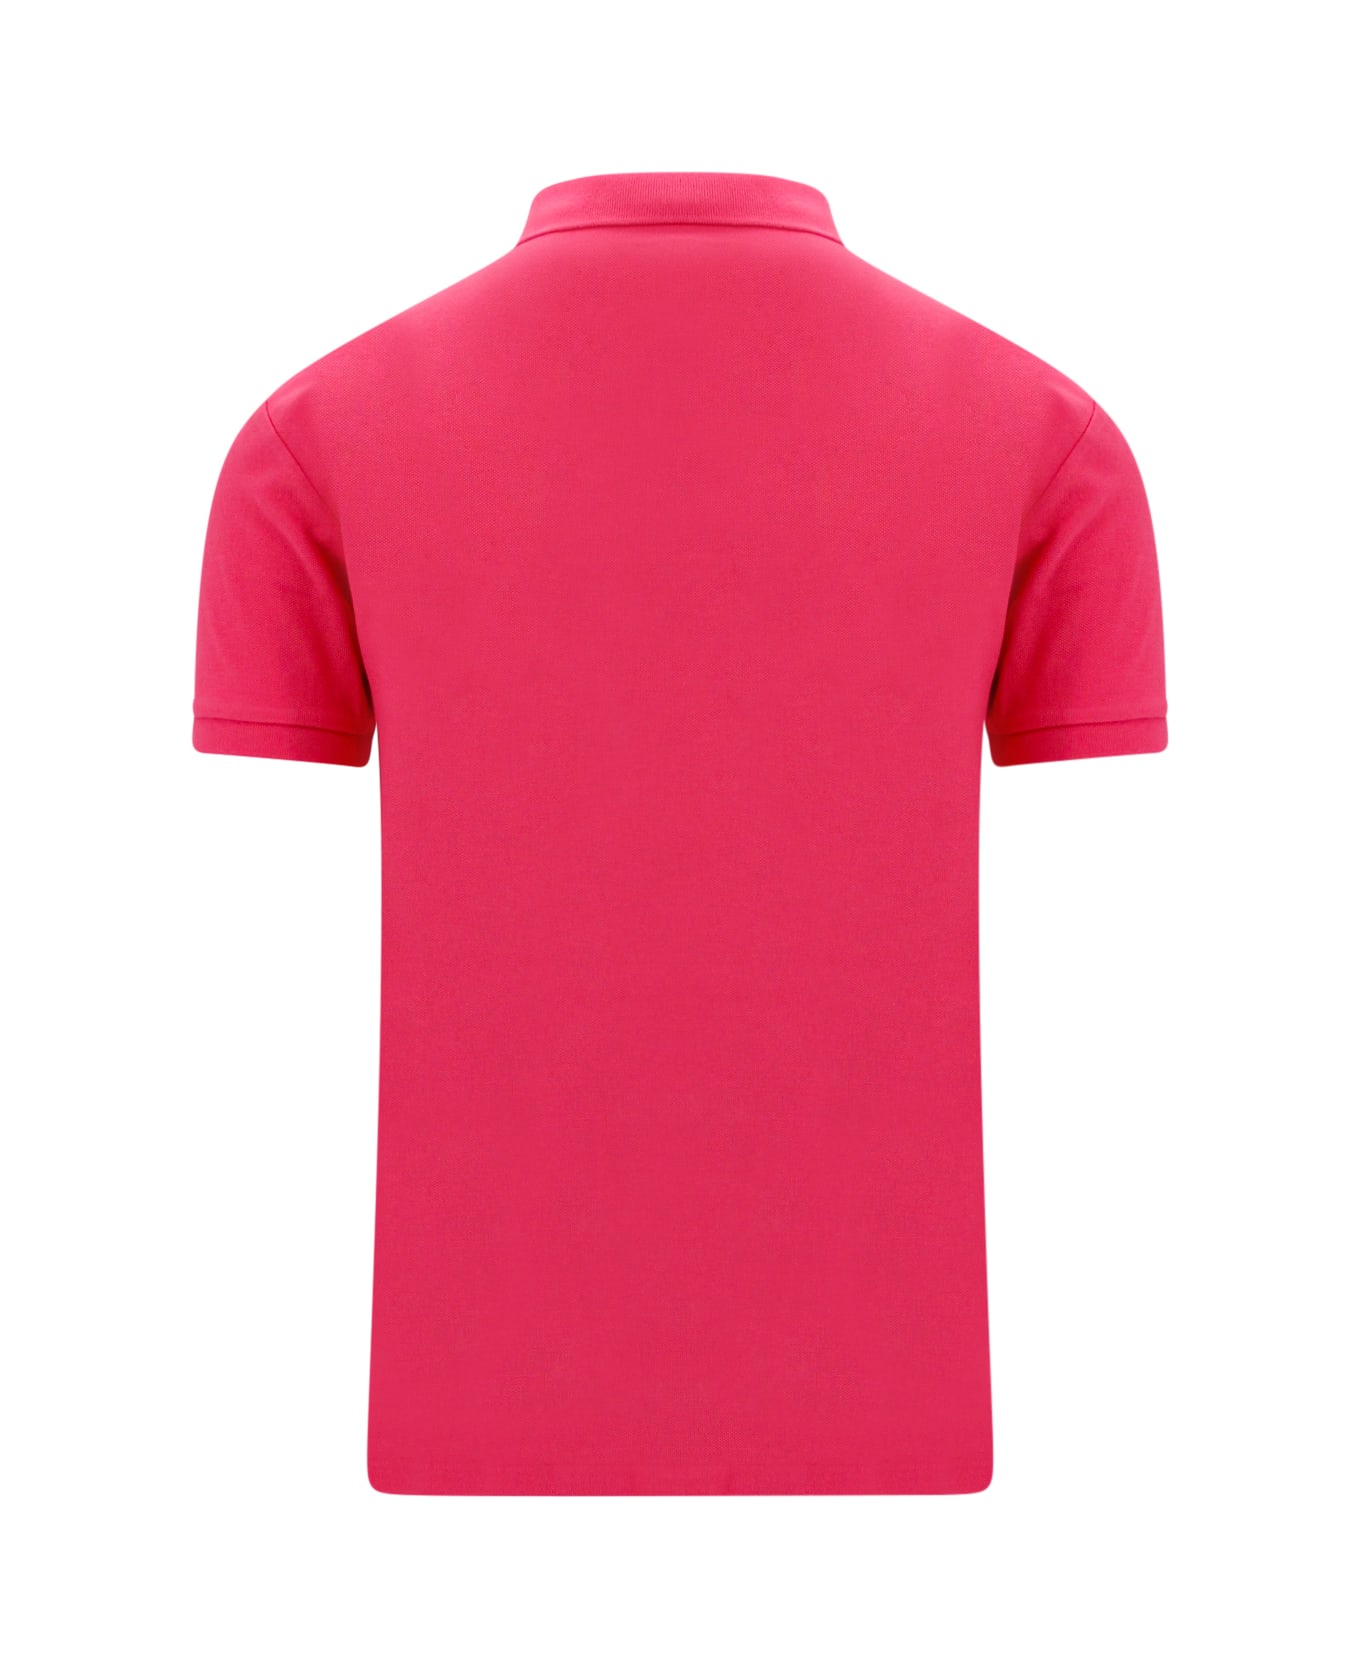 Polo Ralph Lauren Polo Shirt - Hot pink